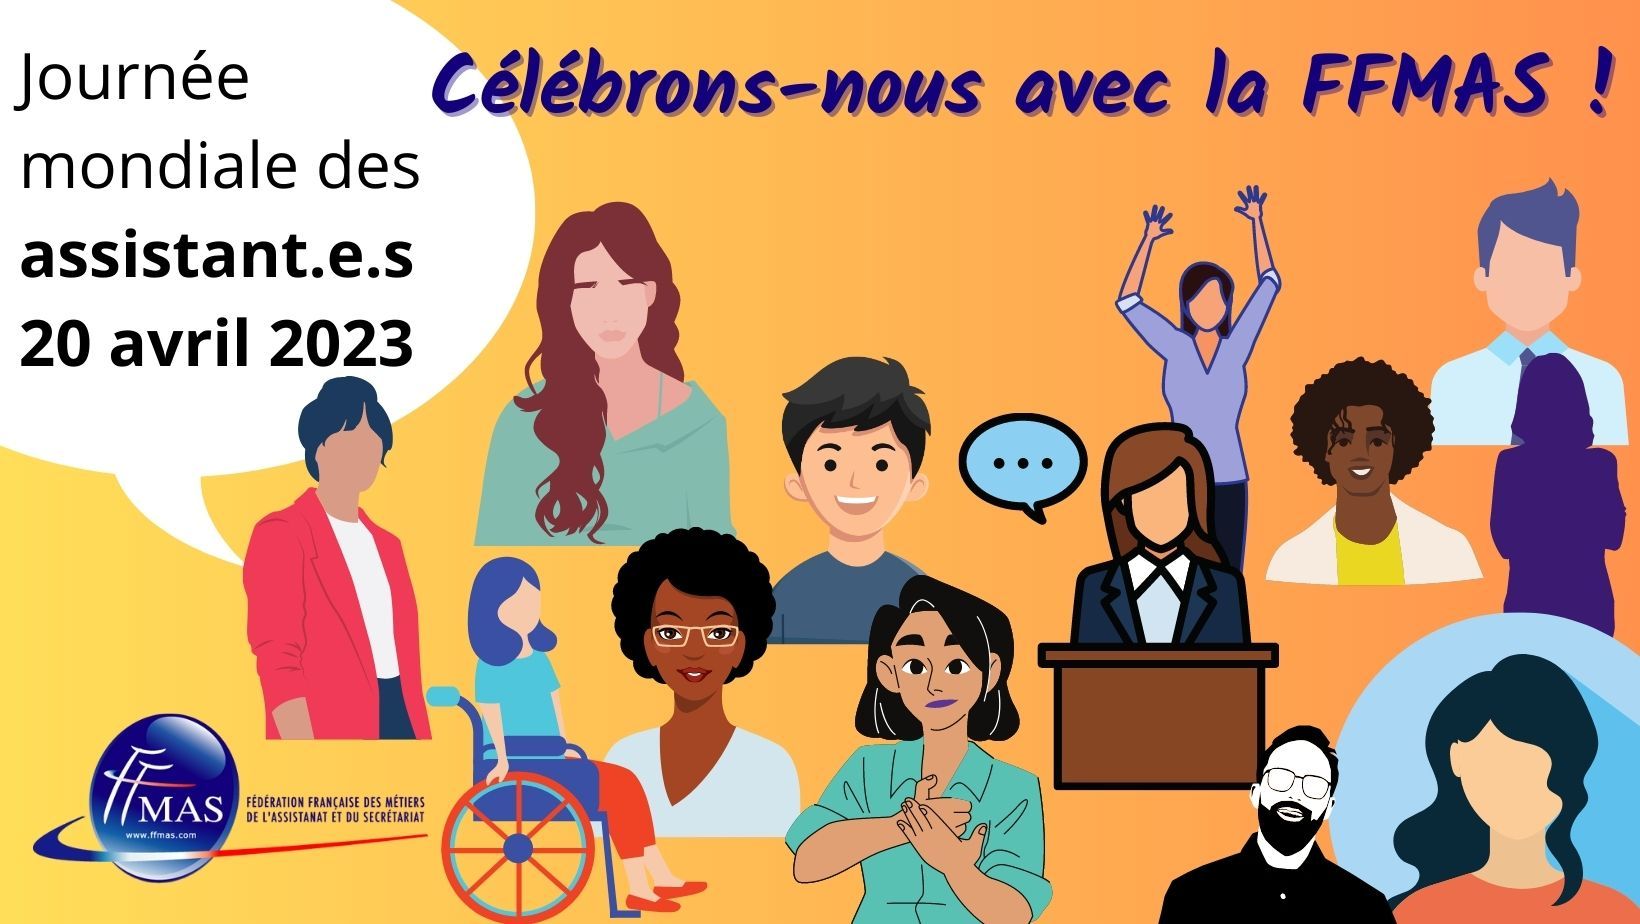 You are currently viewing Journée mondiale des assistant.e.s le 20 avril 2023 |  “Célébrons-nous” avec la FFMAS !